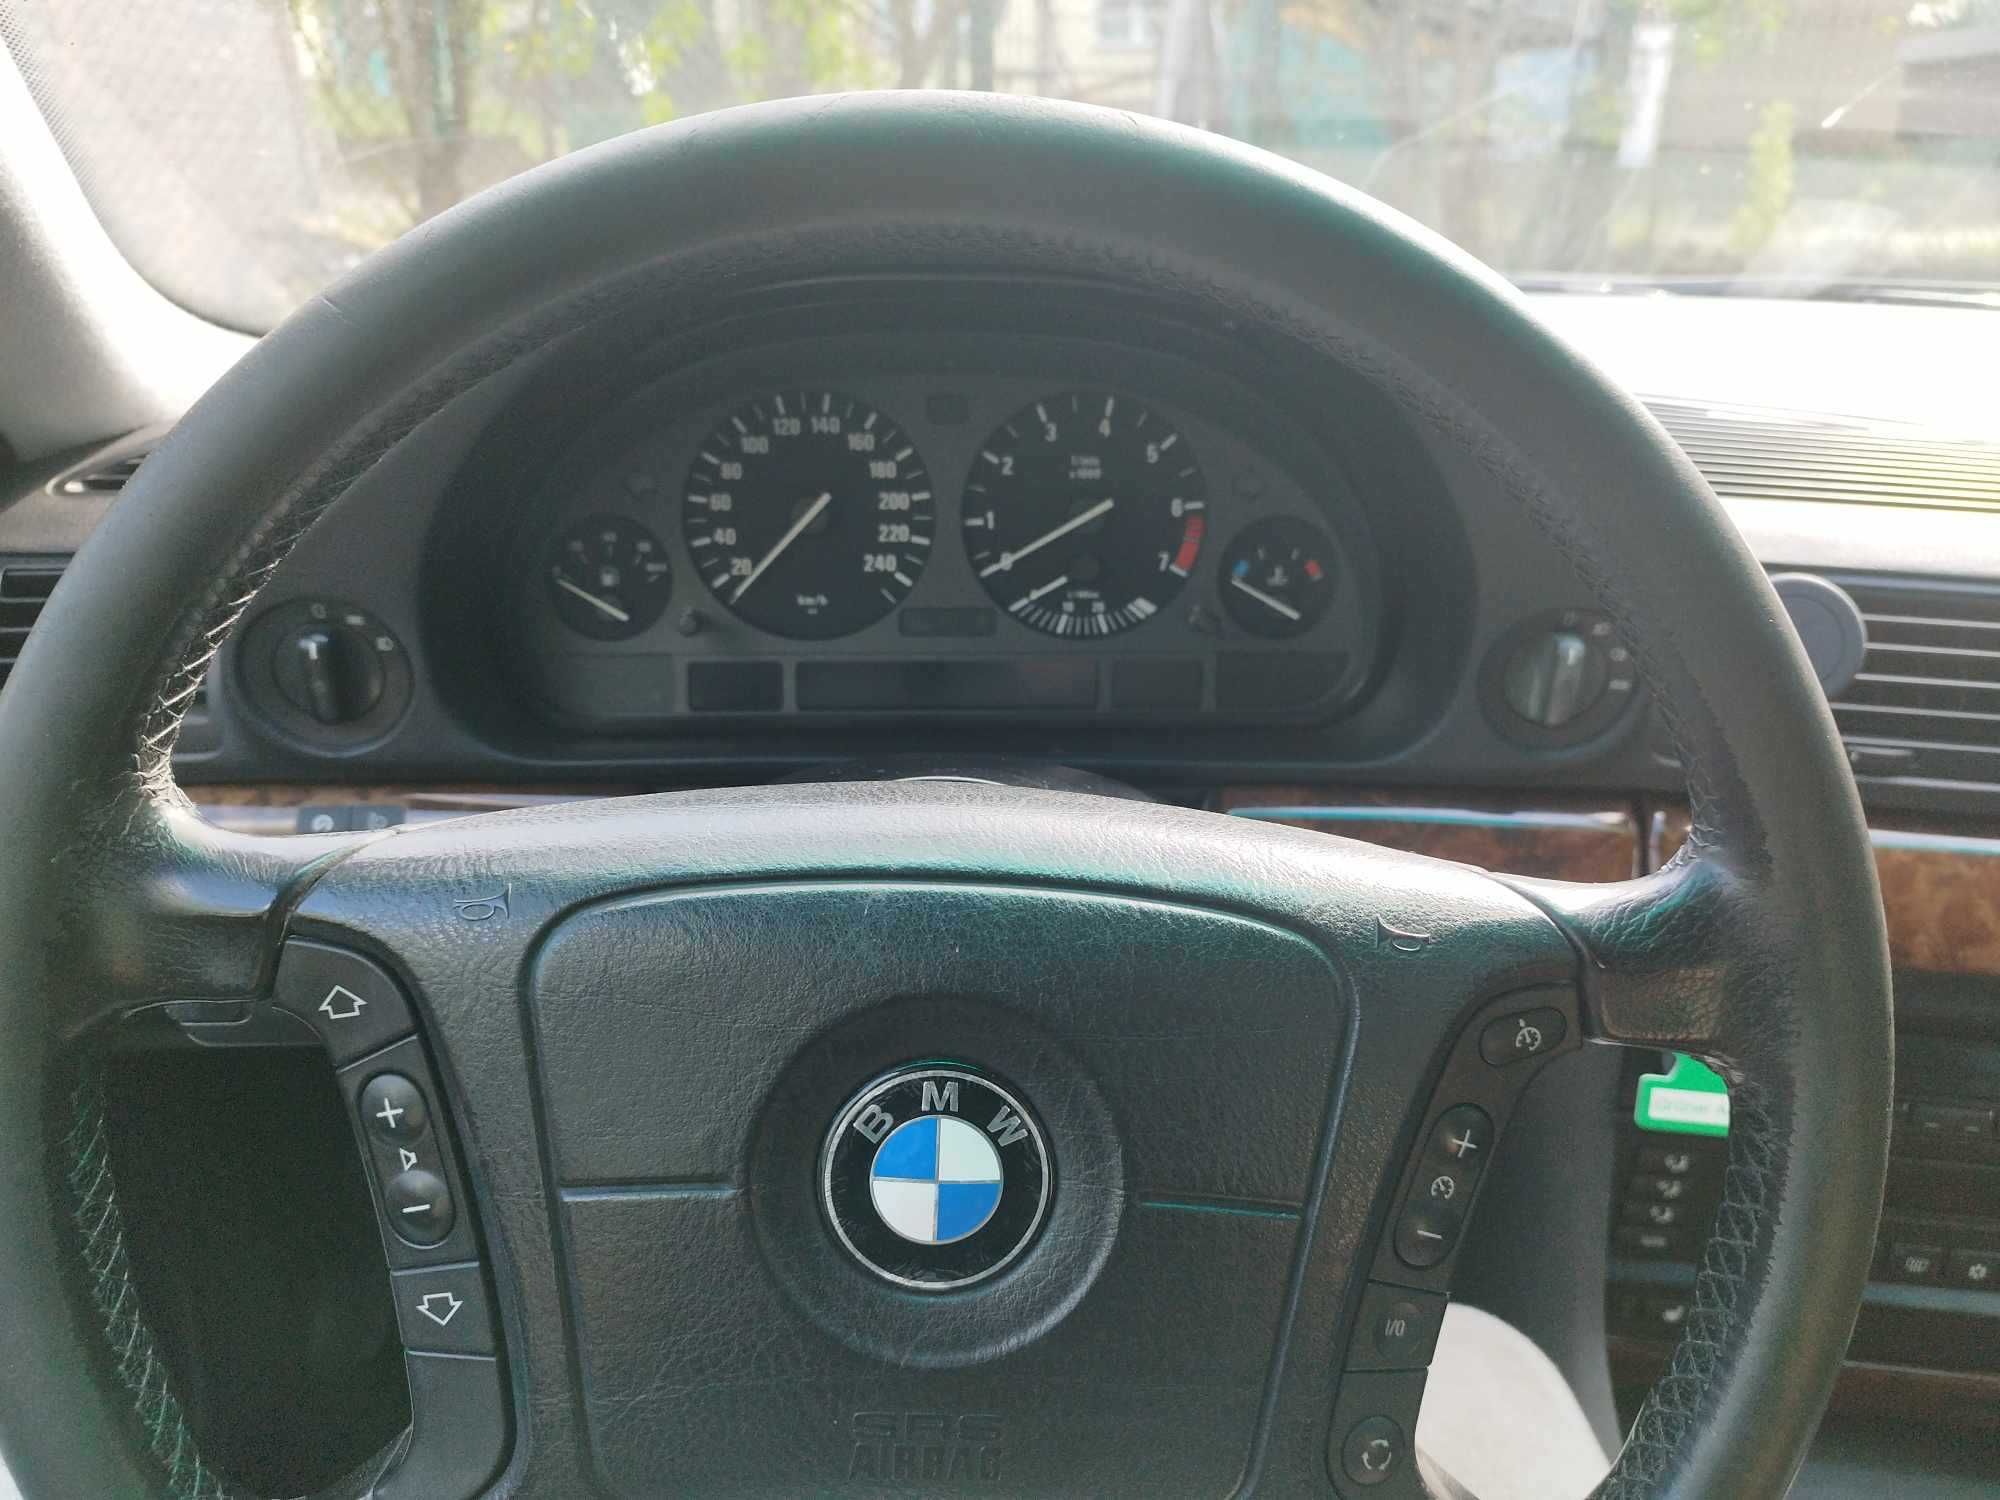 Sprzedam BMW E38 728i LPG